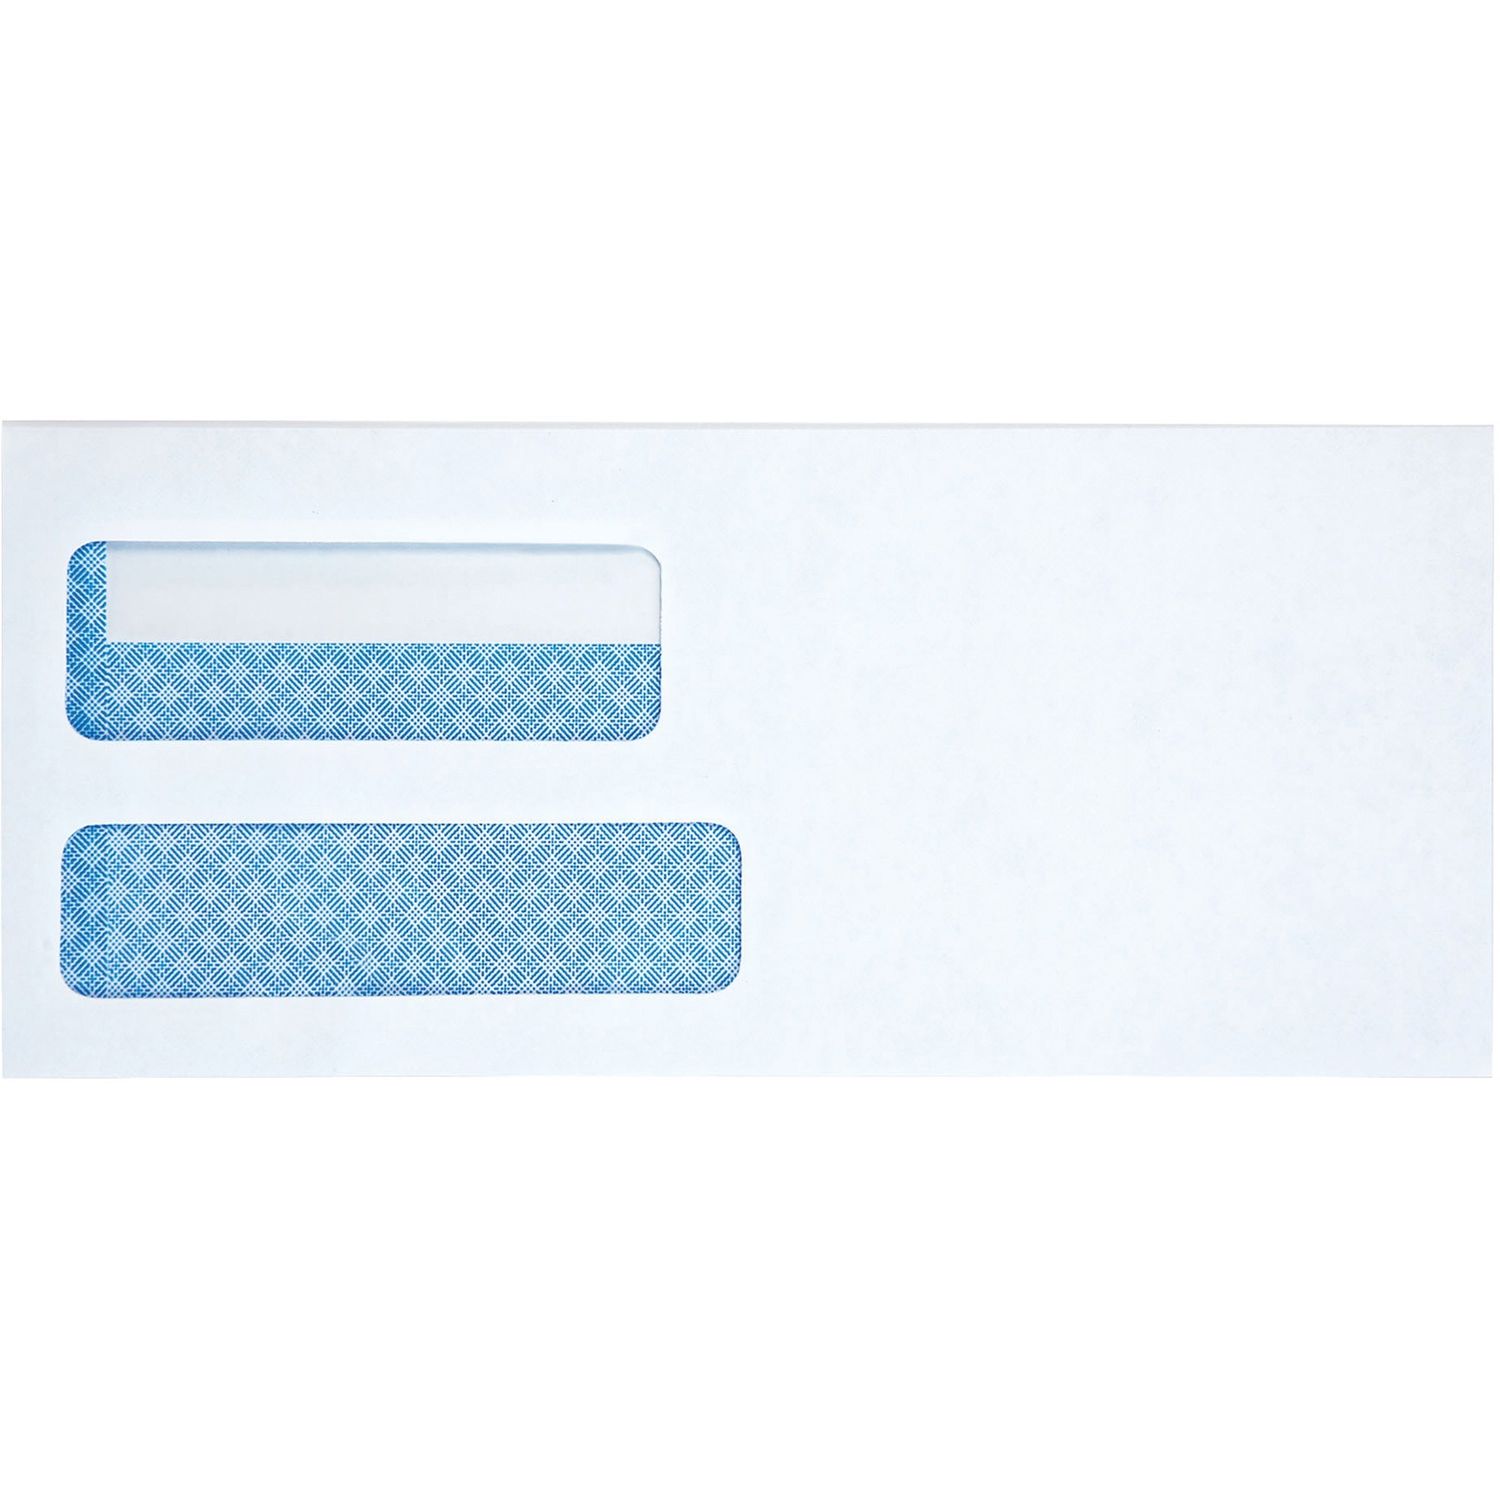 Self-seal #10 Envelopes Multipurpose, #10, 24 lb, Self-sealing, 500 / Box, White